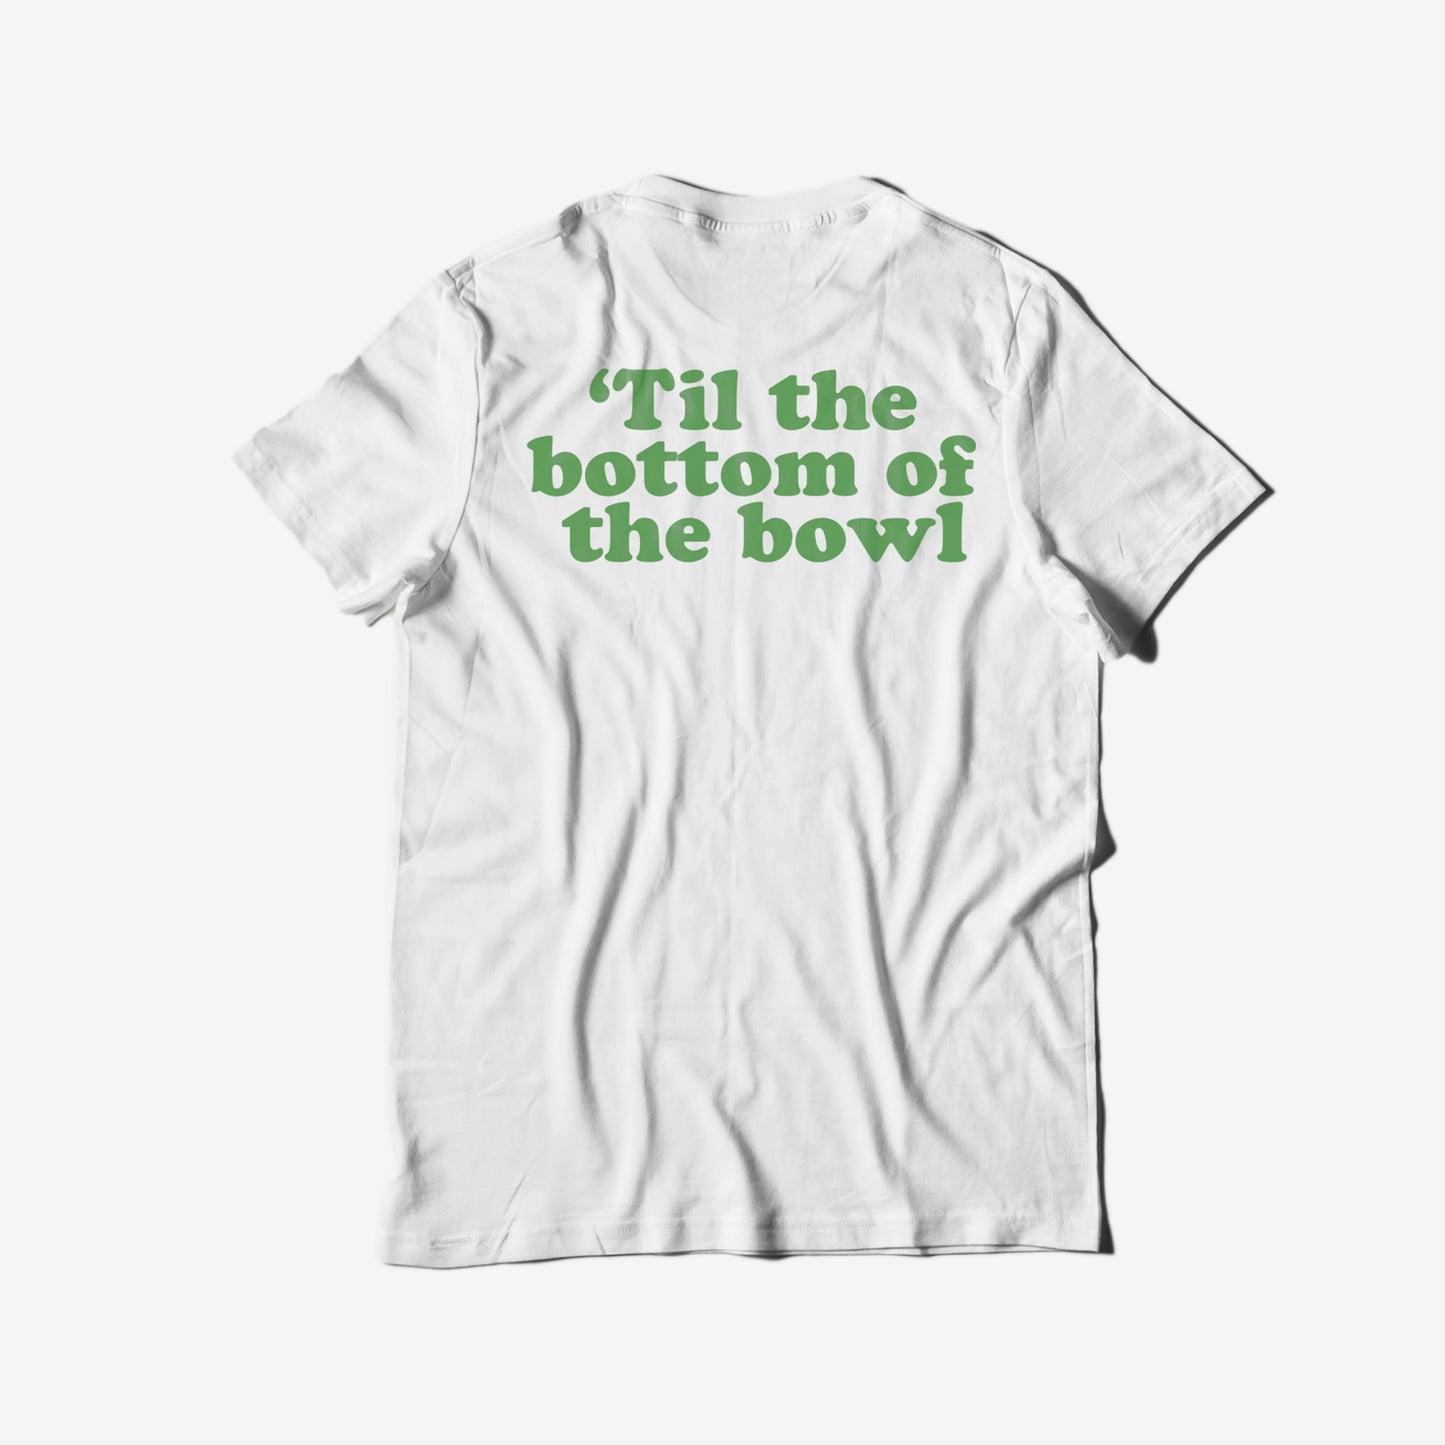 'Best Buds' - Cotton T-Shirt